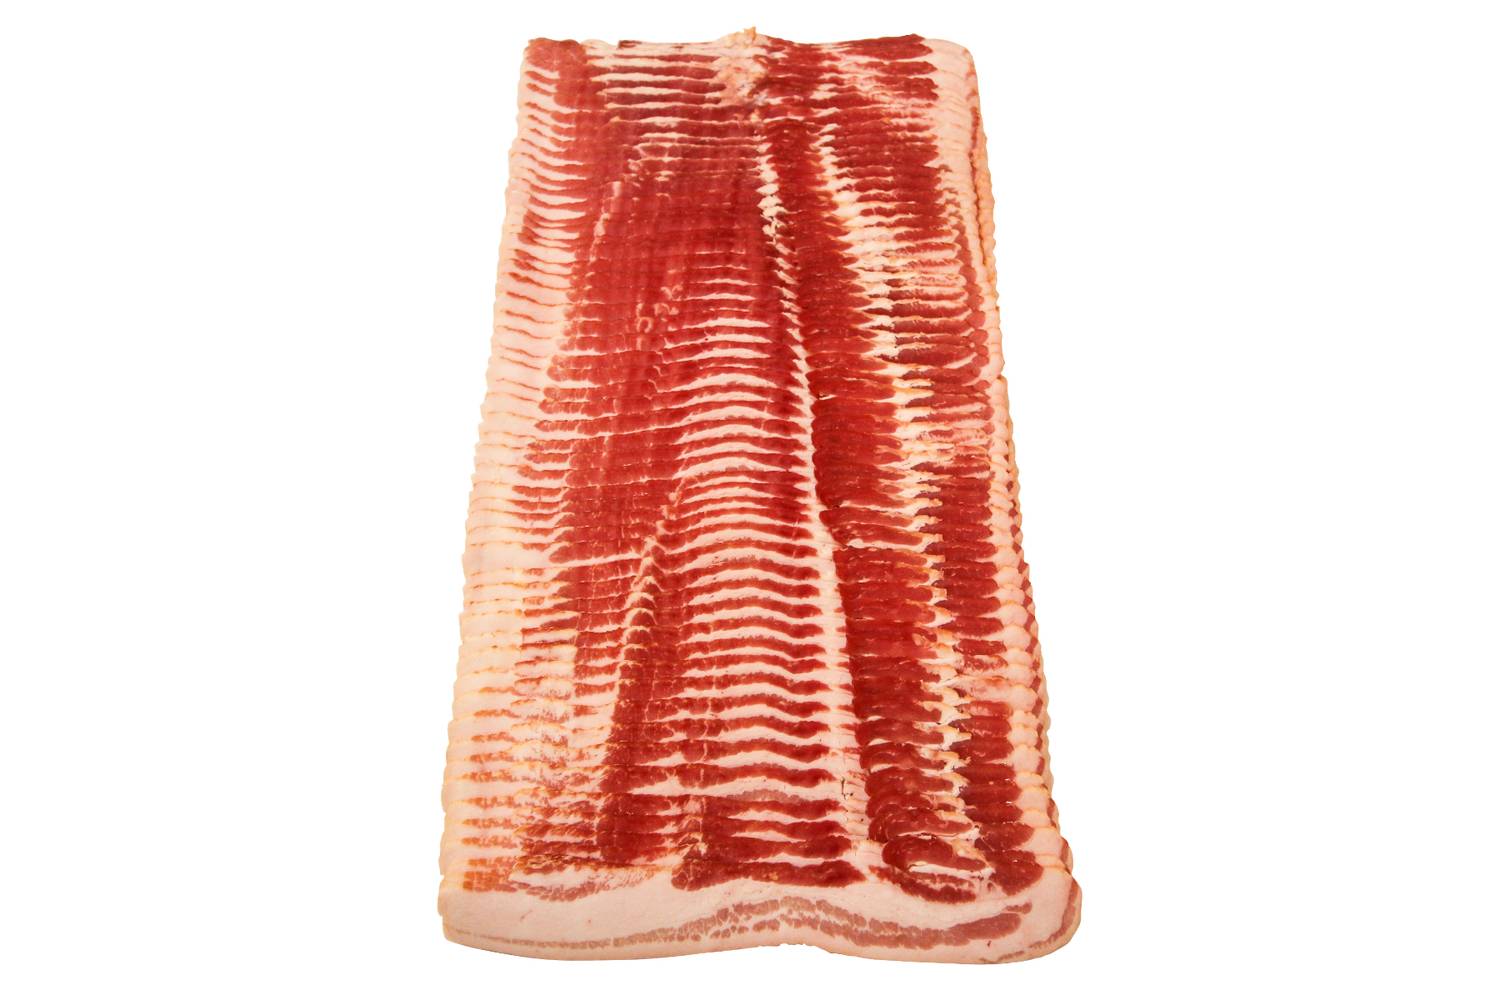 Kruse & Son - Sliced Bacon - 18-22 slices per lb, 25 lbs (1 Unit per Case)